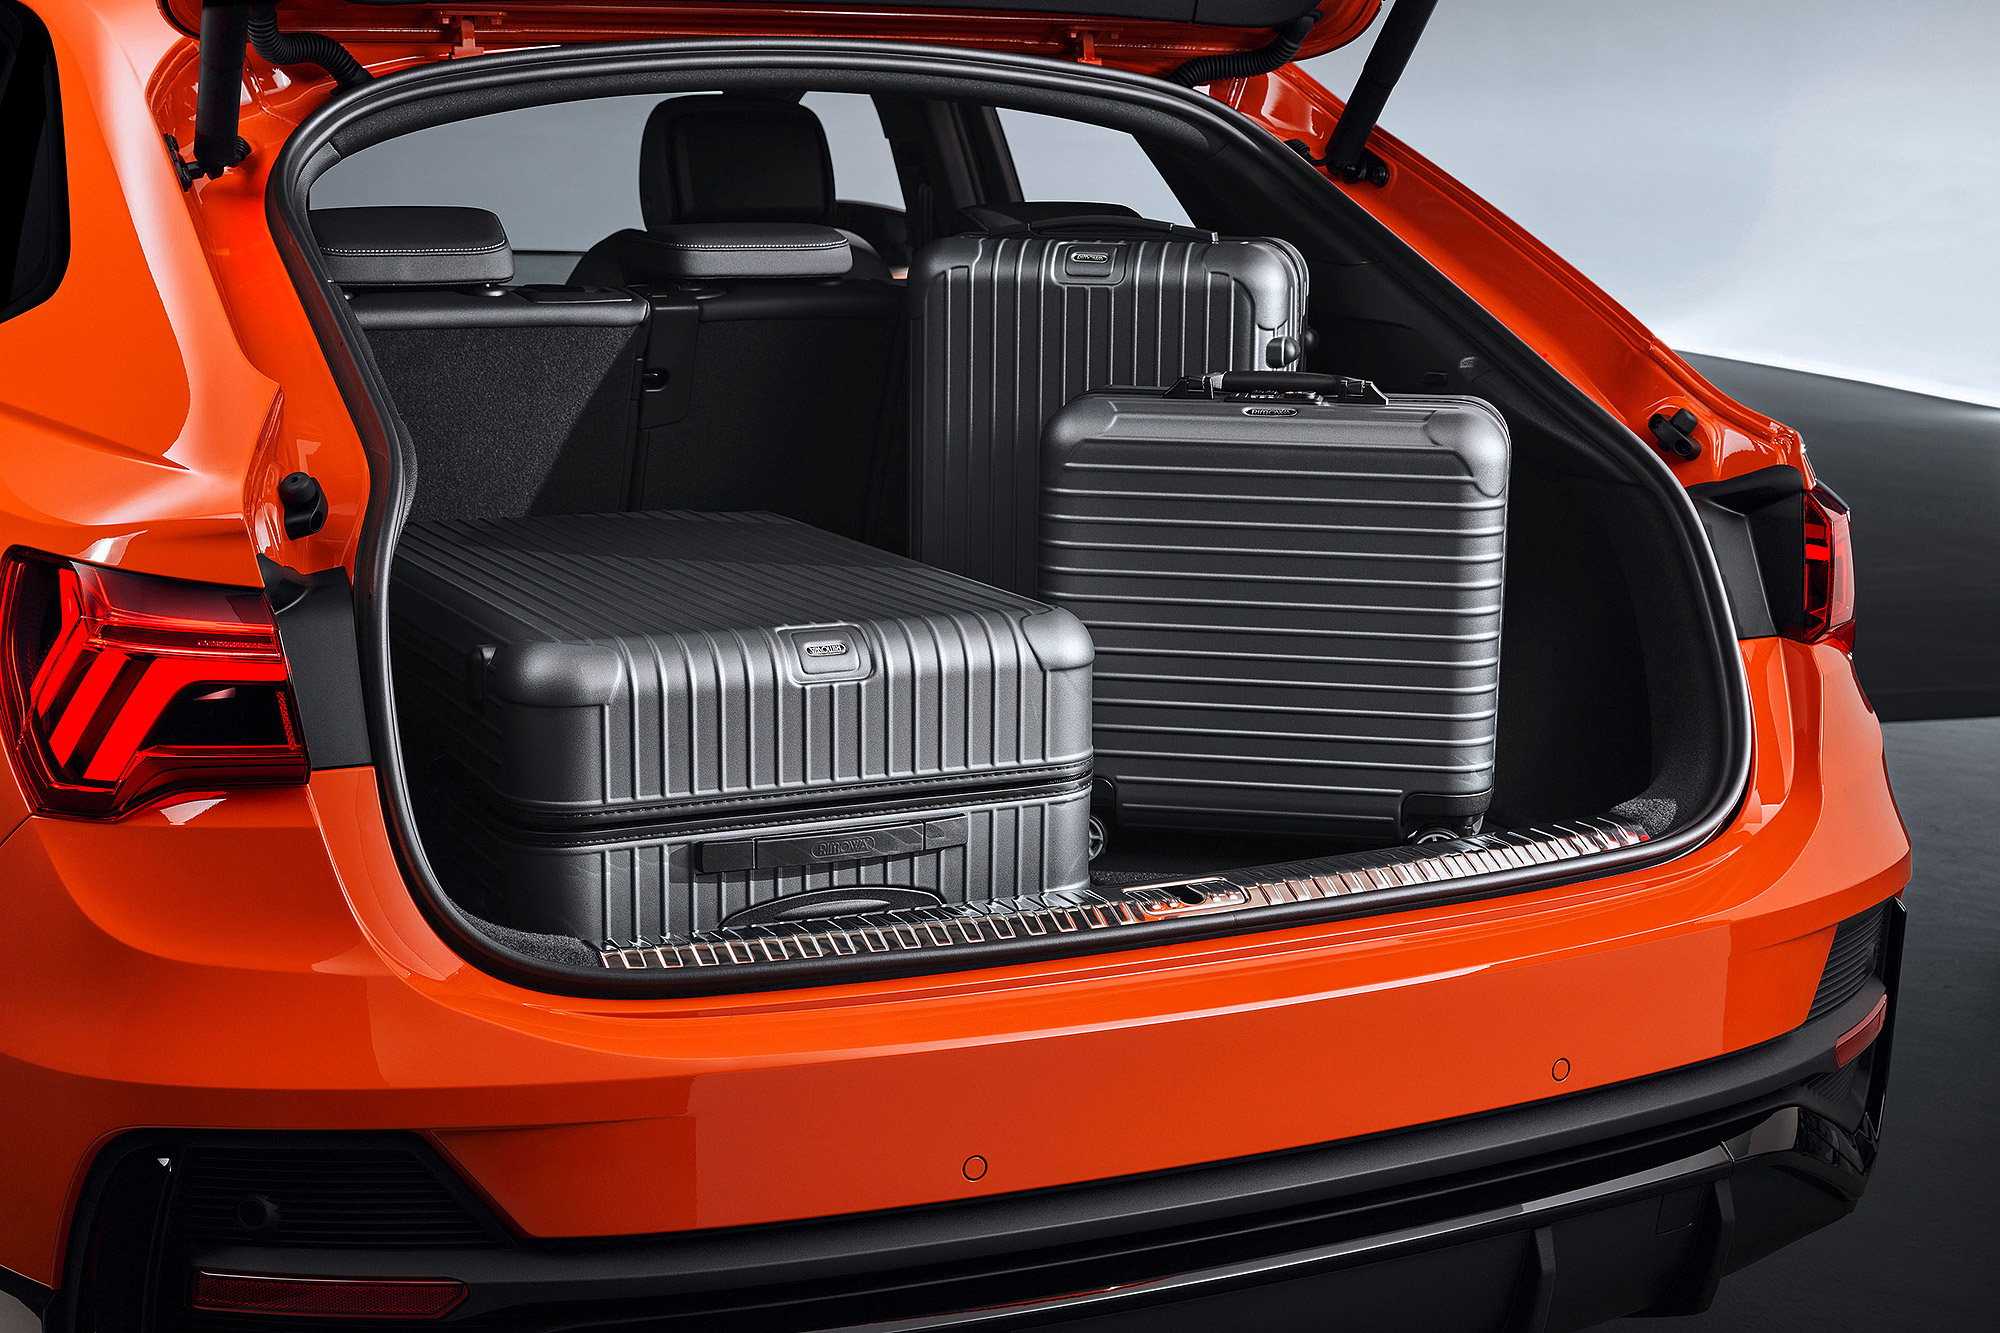 Q3 Sportback 具有 530 公升至 1,400 公升的行李廂容積。